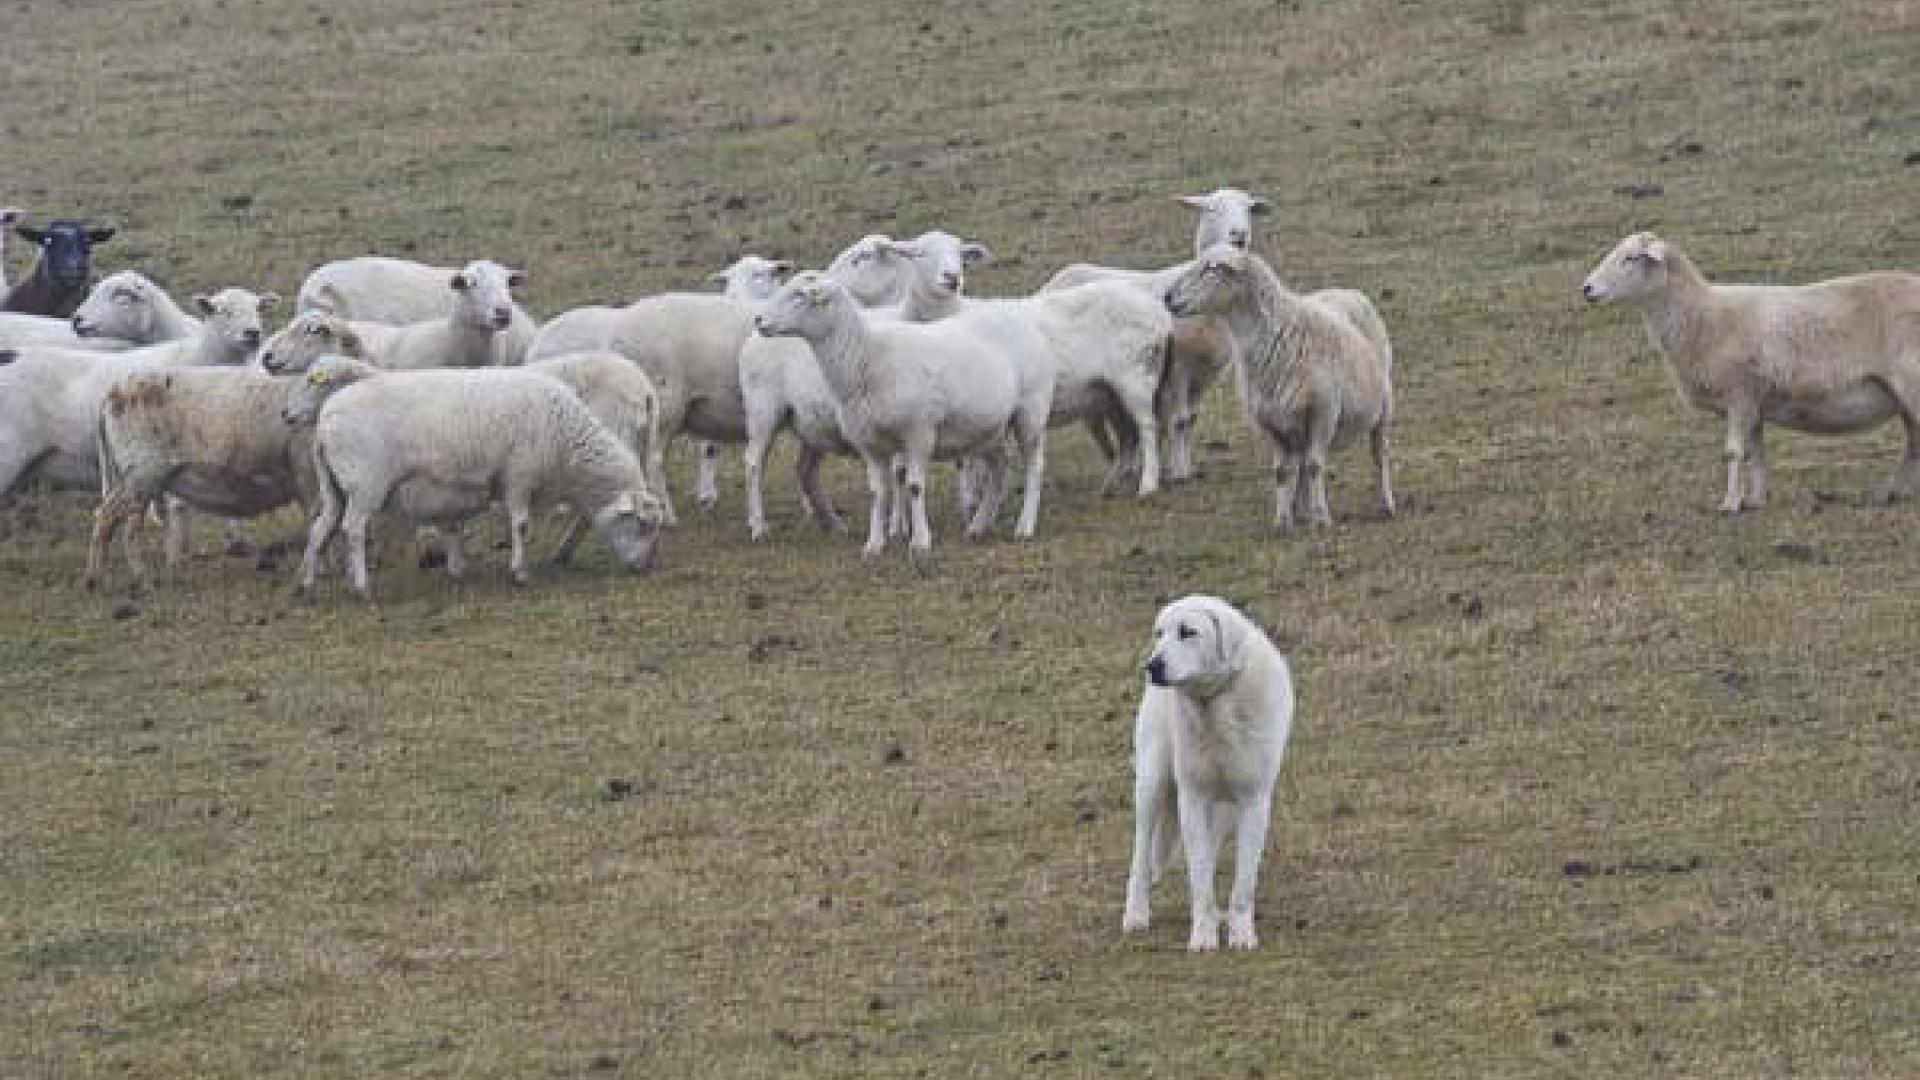 Sheepdog protecting sheep